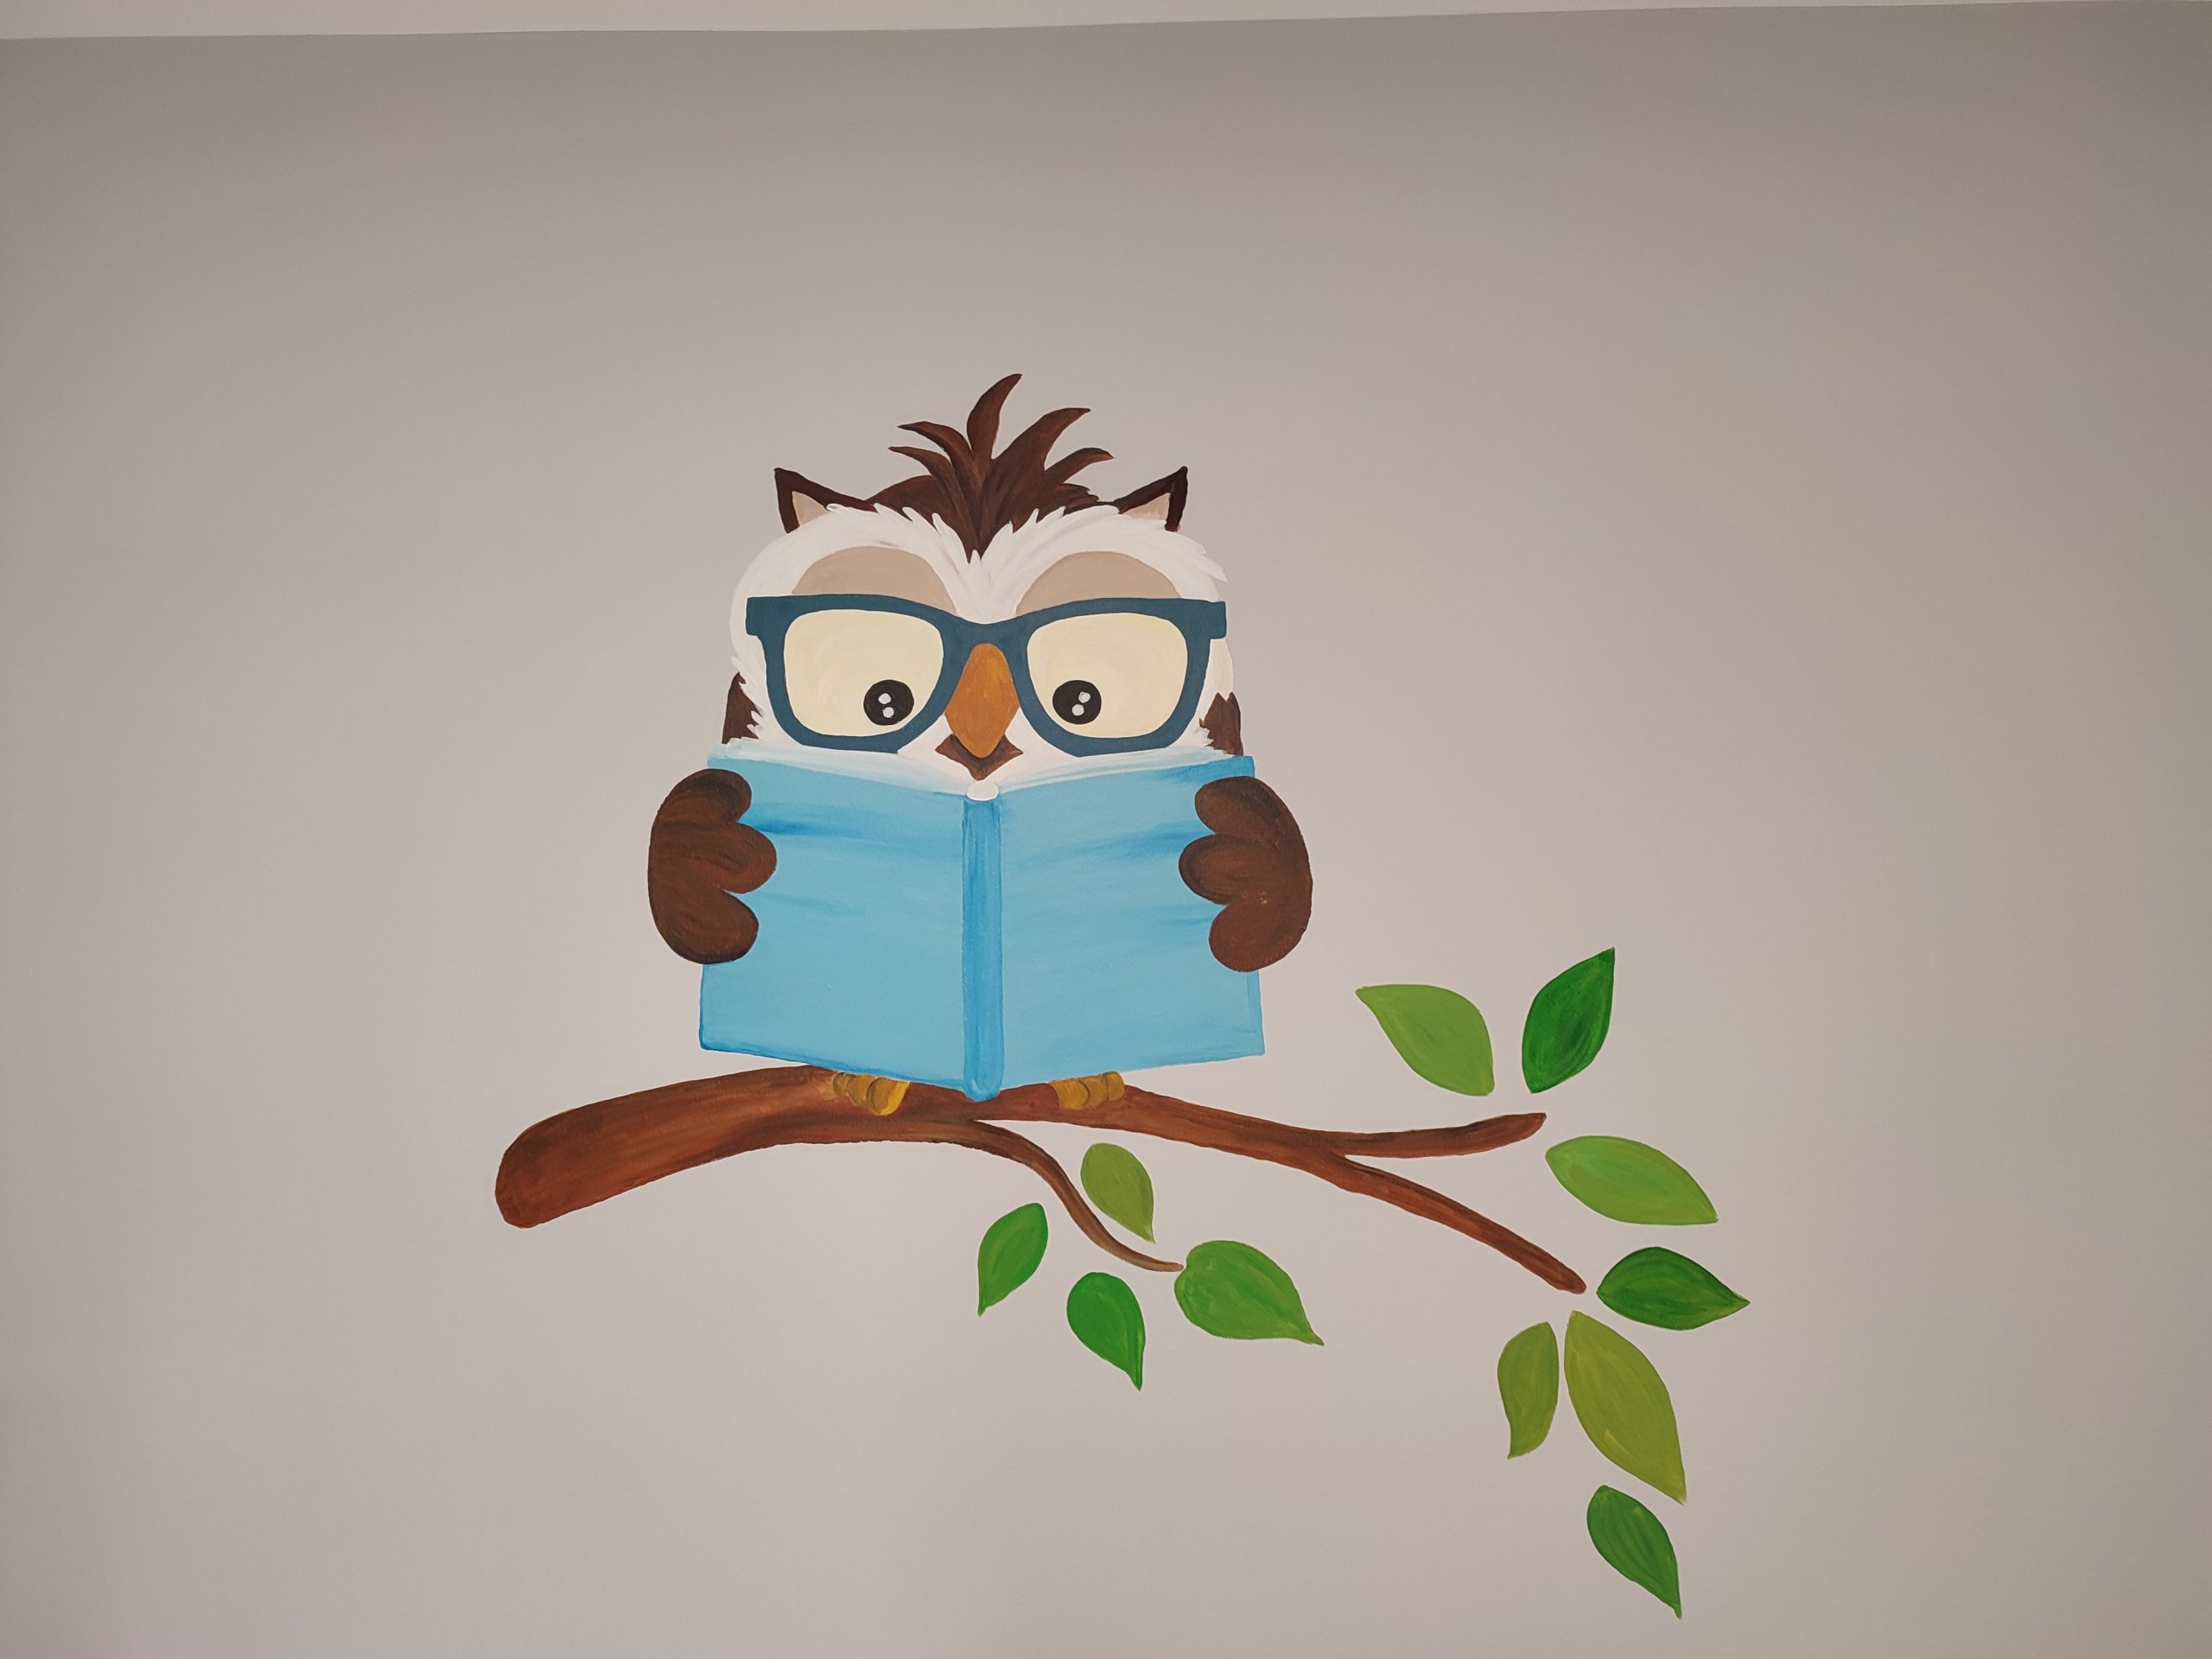 Namalowana na ścianie brązowa sowa w granatowych okularach, trzyma niebieską książkę, siedzi na gałązce z zielonymi listkami